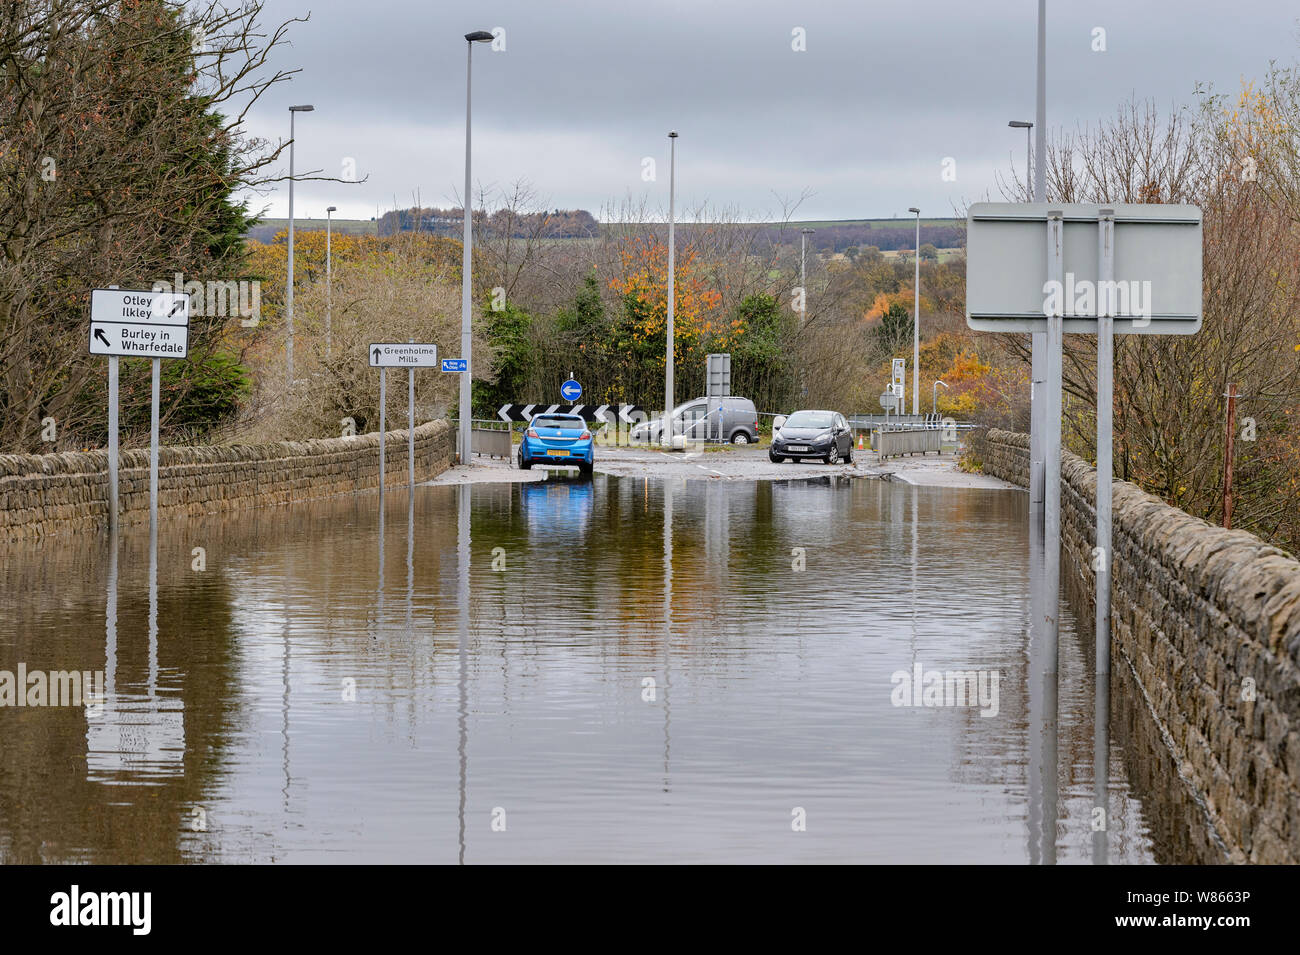 Allagamento - allagata la strada è impraticabile per le automobili come profondo acqua di inondazione rende la guida pericolosa per i veicoli - Burley in Wharfedale, nello Yorkshire, Inghilterra, Regno Unito. Foto Stock